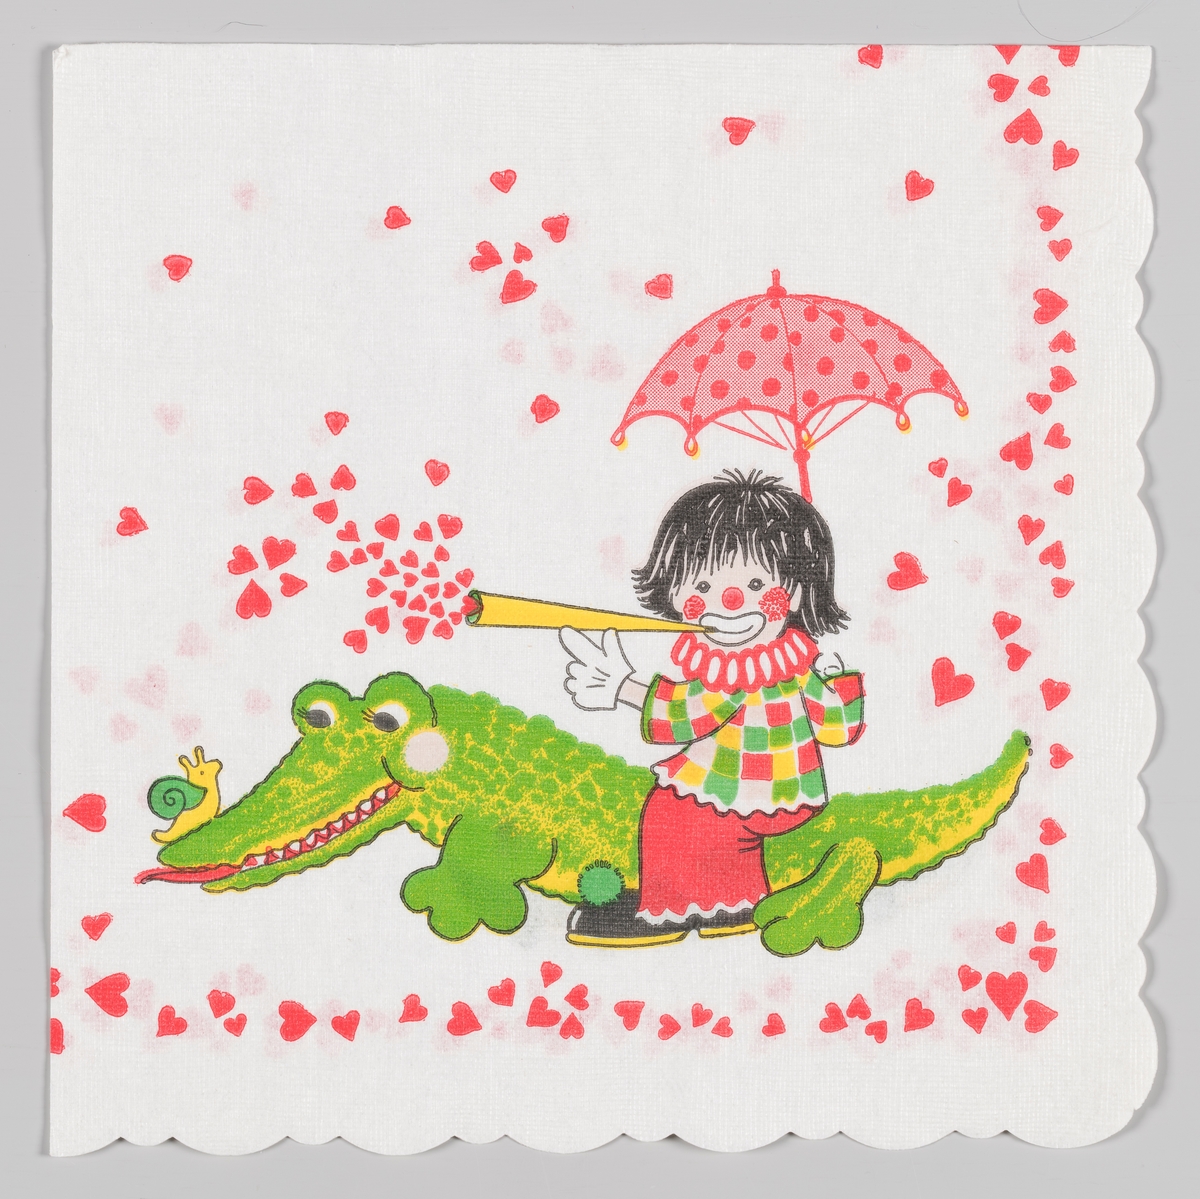 En klovn som sitter med paraply og blåser hjerter ut av et tutehorn. Klovnen sitter på en krokodille som har en snegle på snuten. Langs kanten er det masse hjerter.